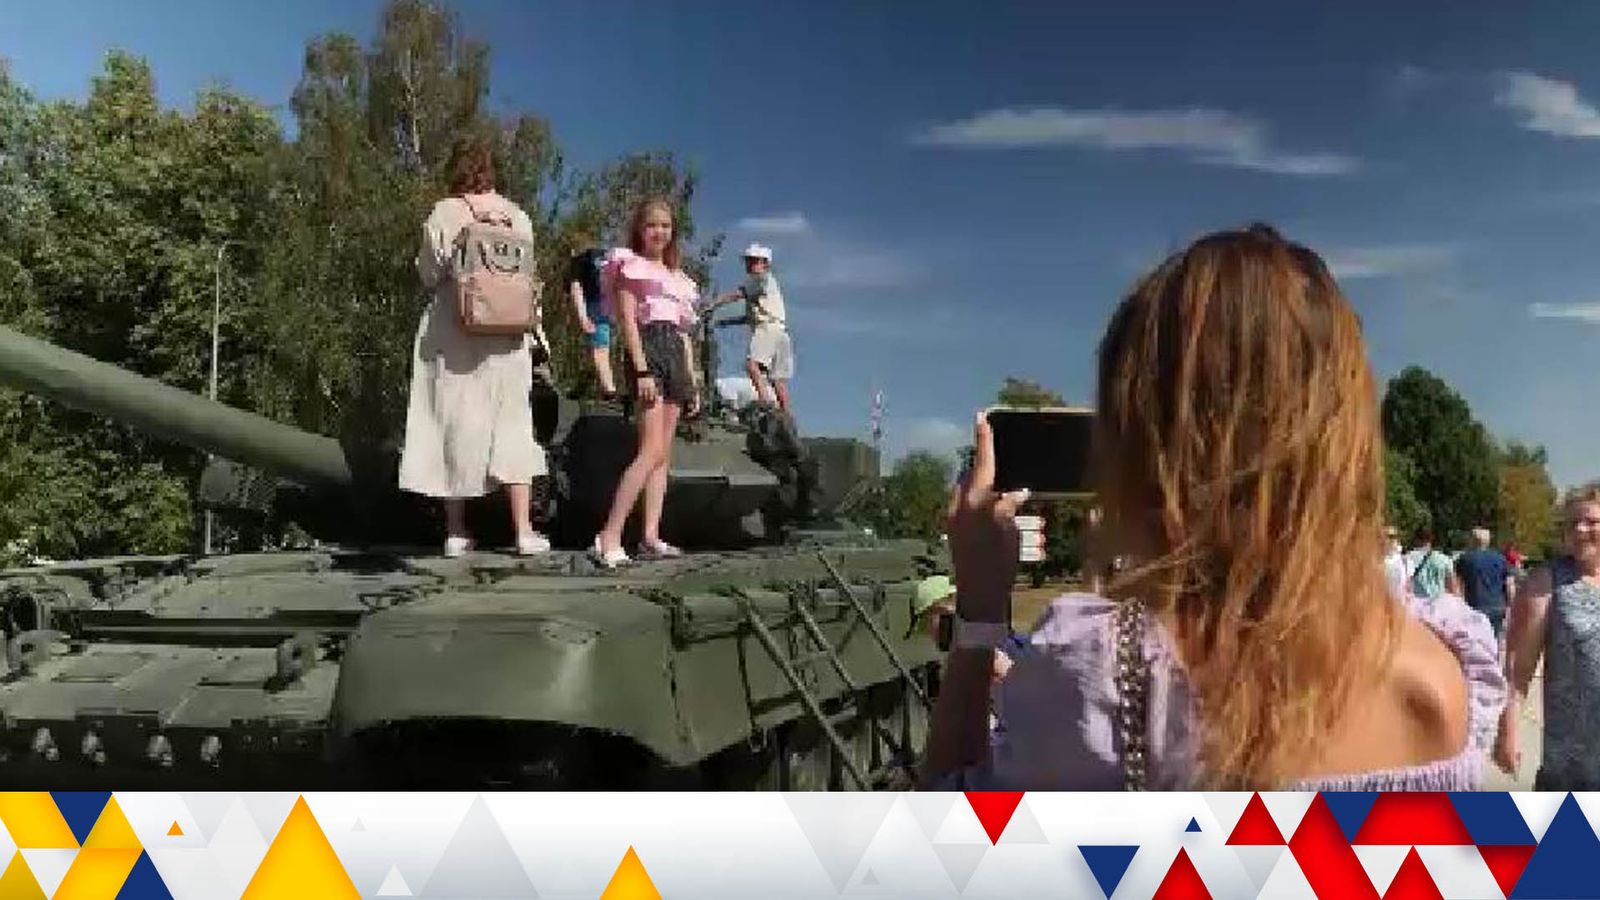 Le famiglie di Mosca si godono la giornata alla fiera dei giochi di guerra mentre l’Ucraina celebra il Giorno dell’Indipendenza |  notizie dal mondo